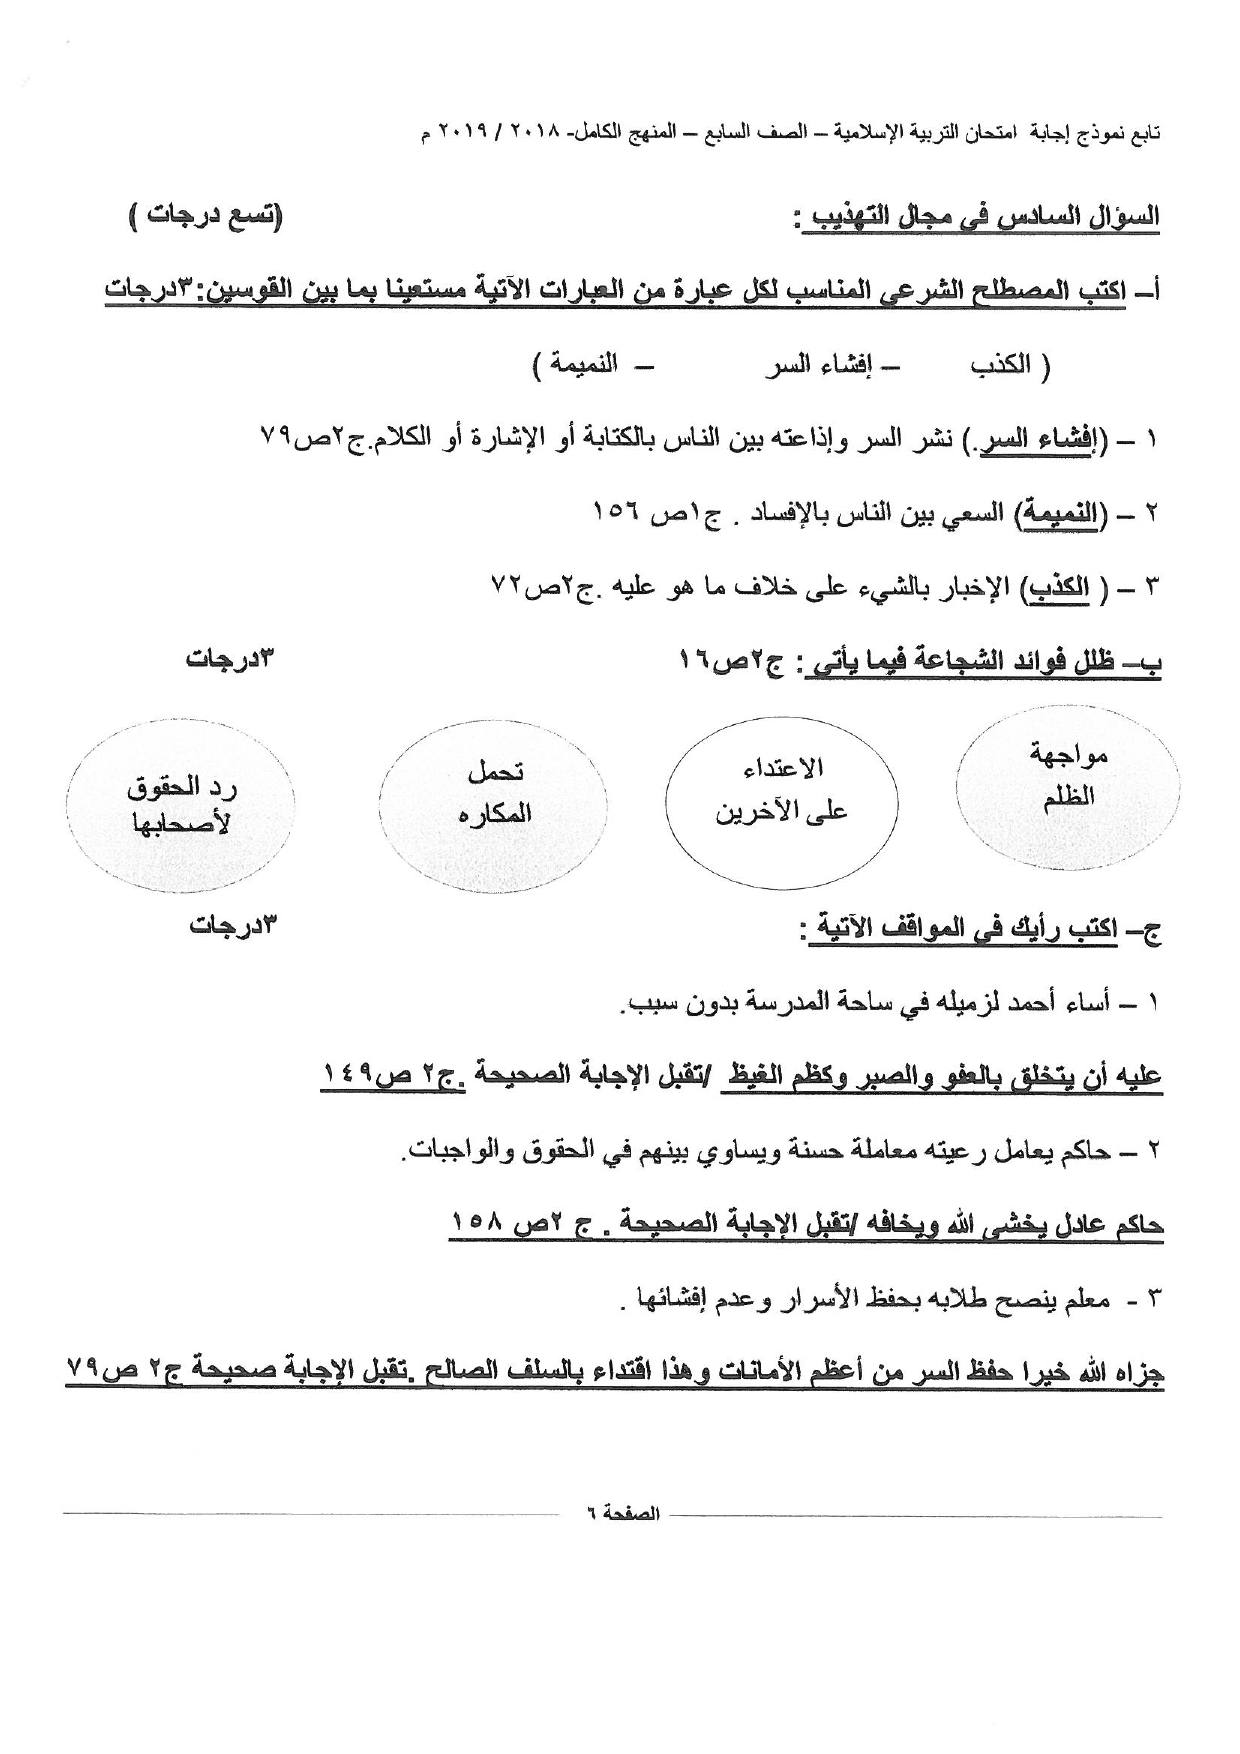 نموذج اجابة اختبار اسلامية الصف السابع الفصل الثاني الجهراء 2018 2019 مدرستي الكويتية